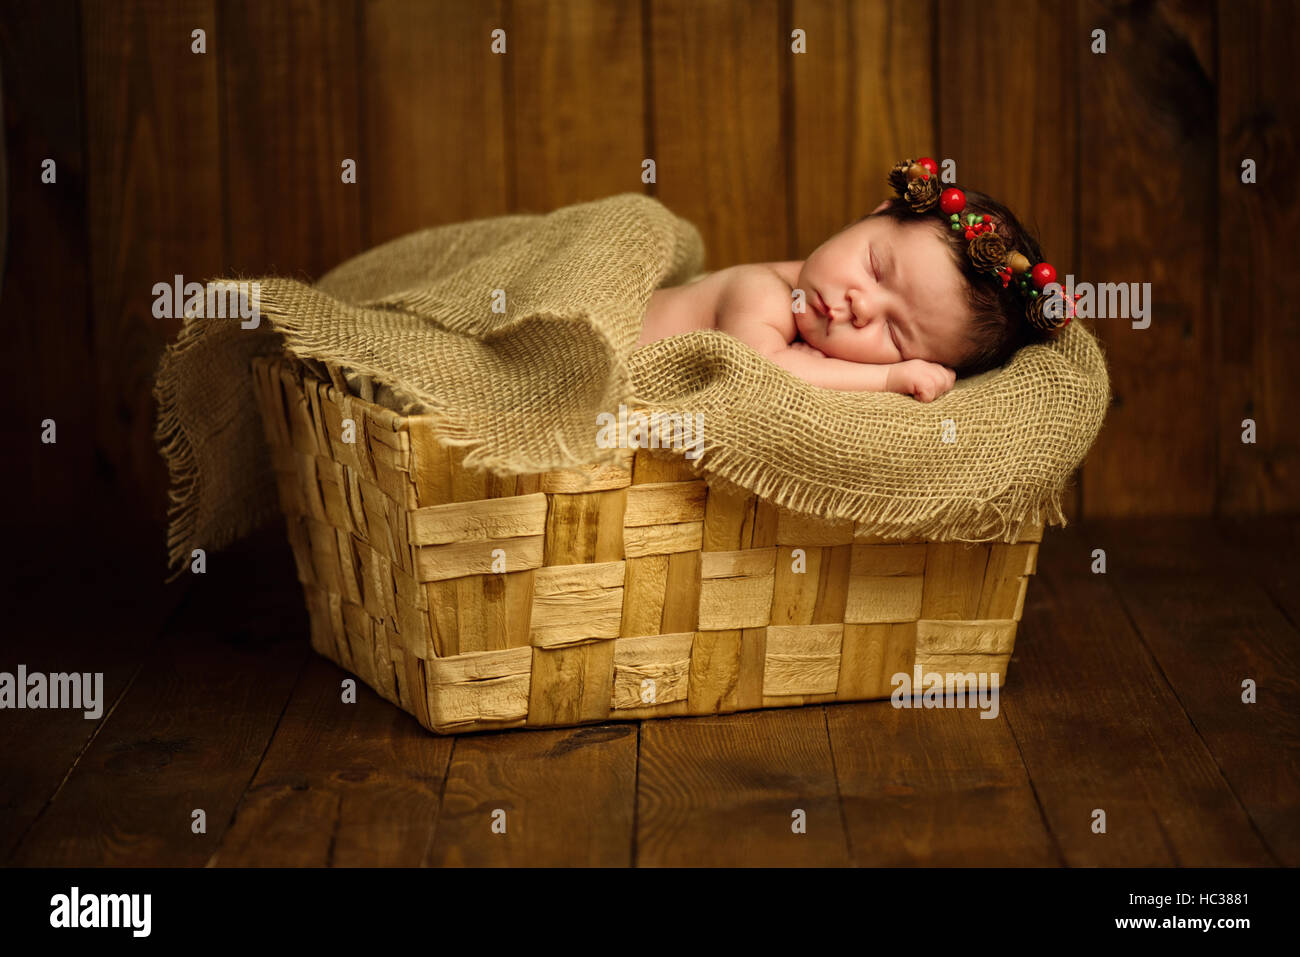 Niña Bebé Recién Nacido, Durmiendo En Una Canasta De Mimbre. Fotos